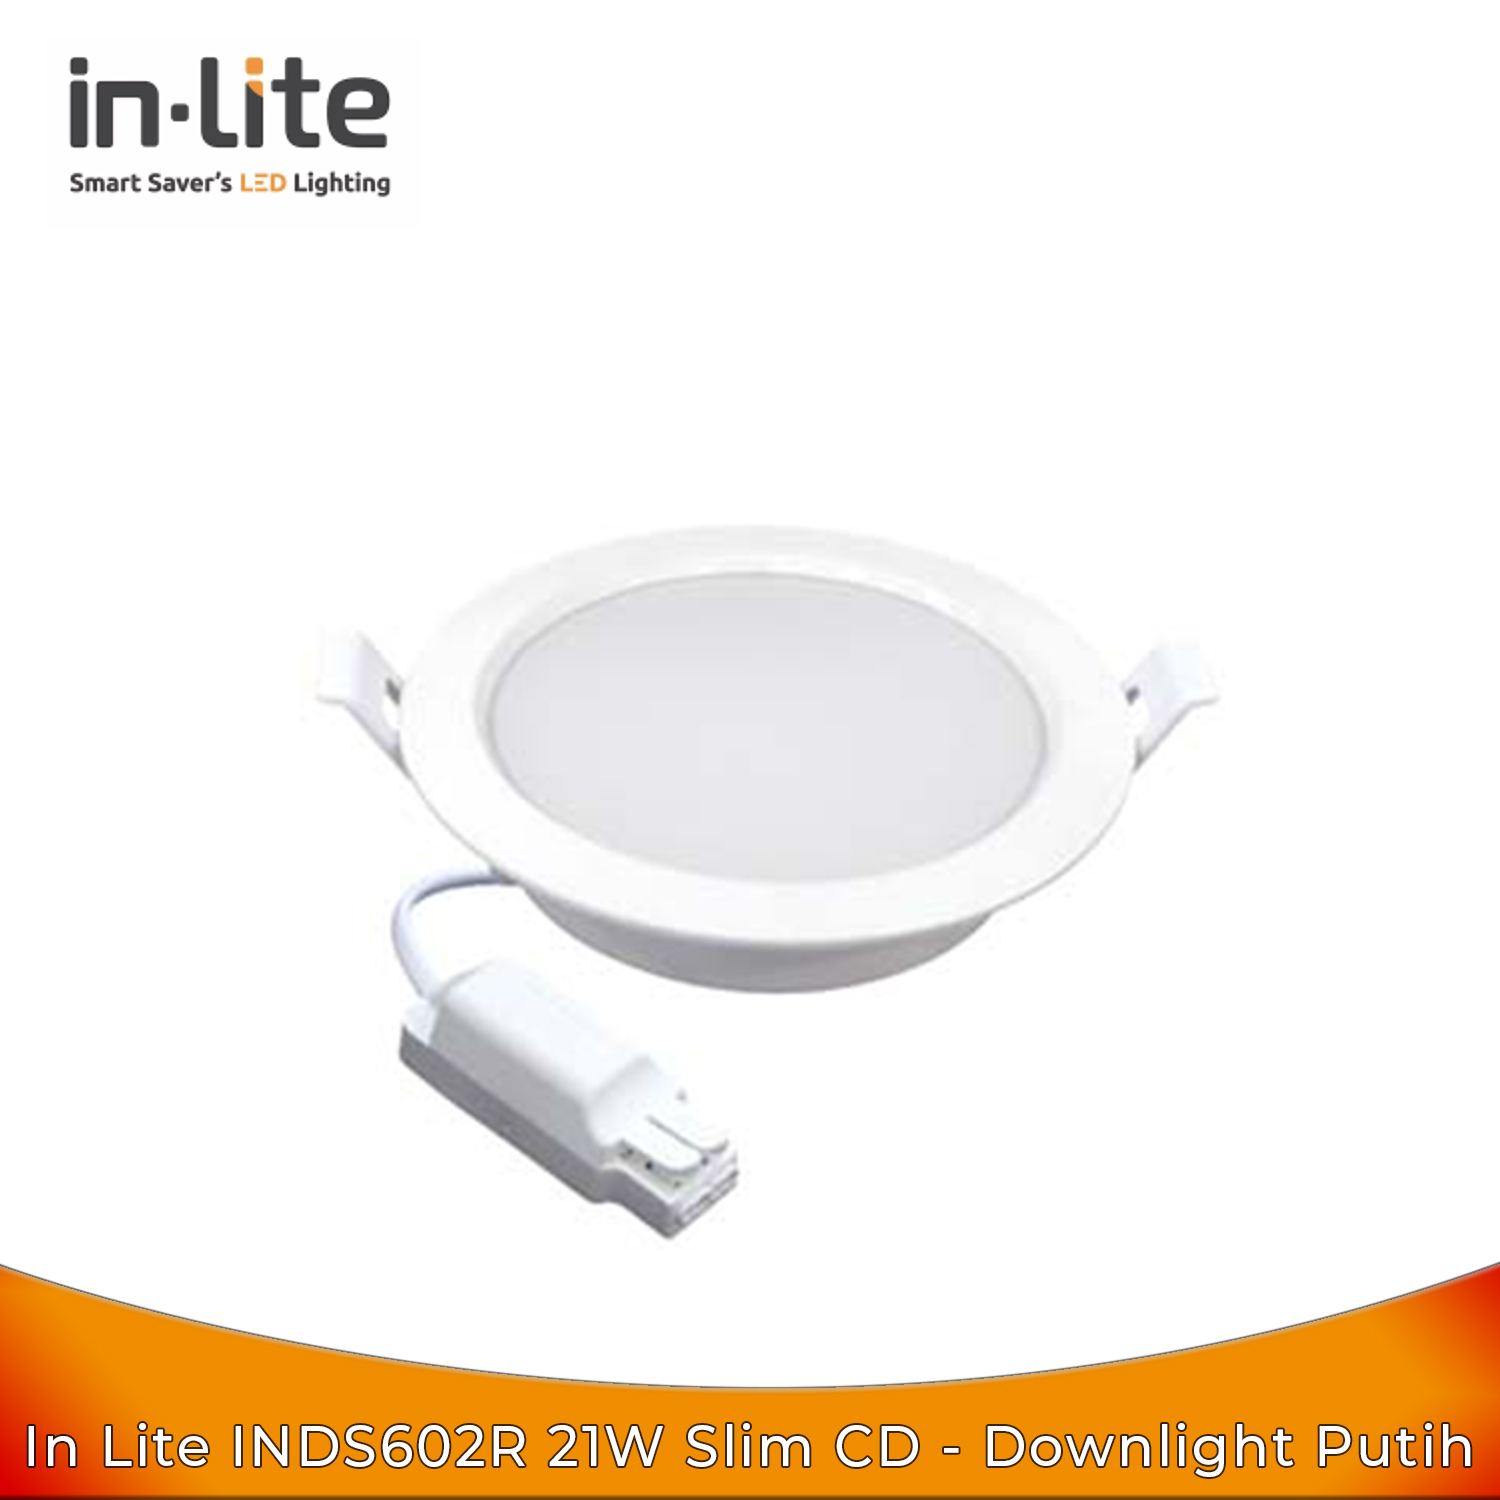 Inlite INDS602R 21W Slim Downlight CD Putih - Bohlam Lampu